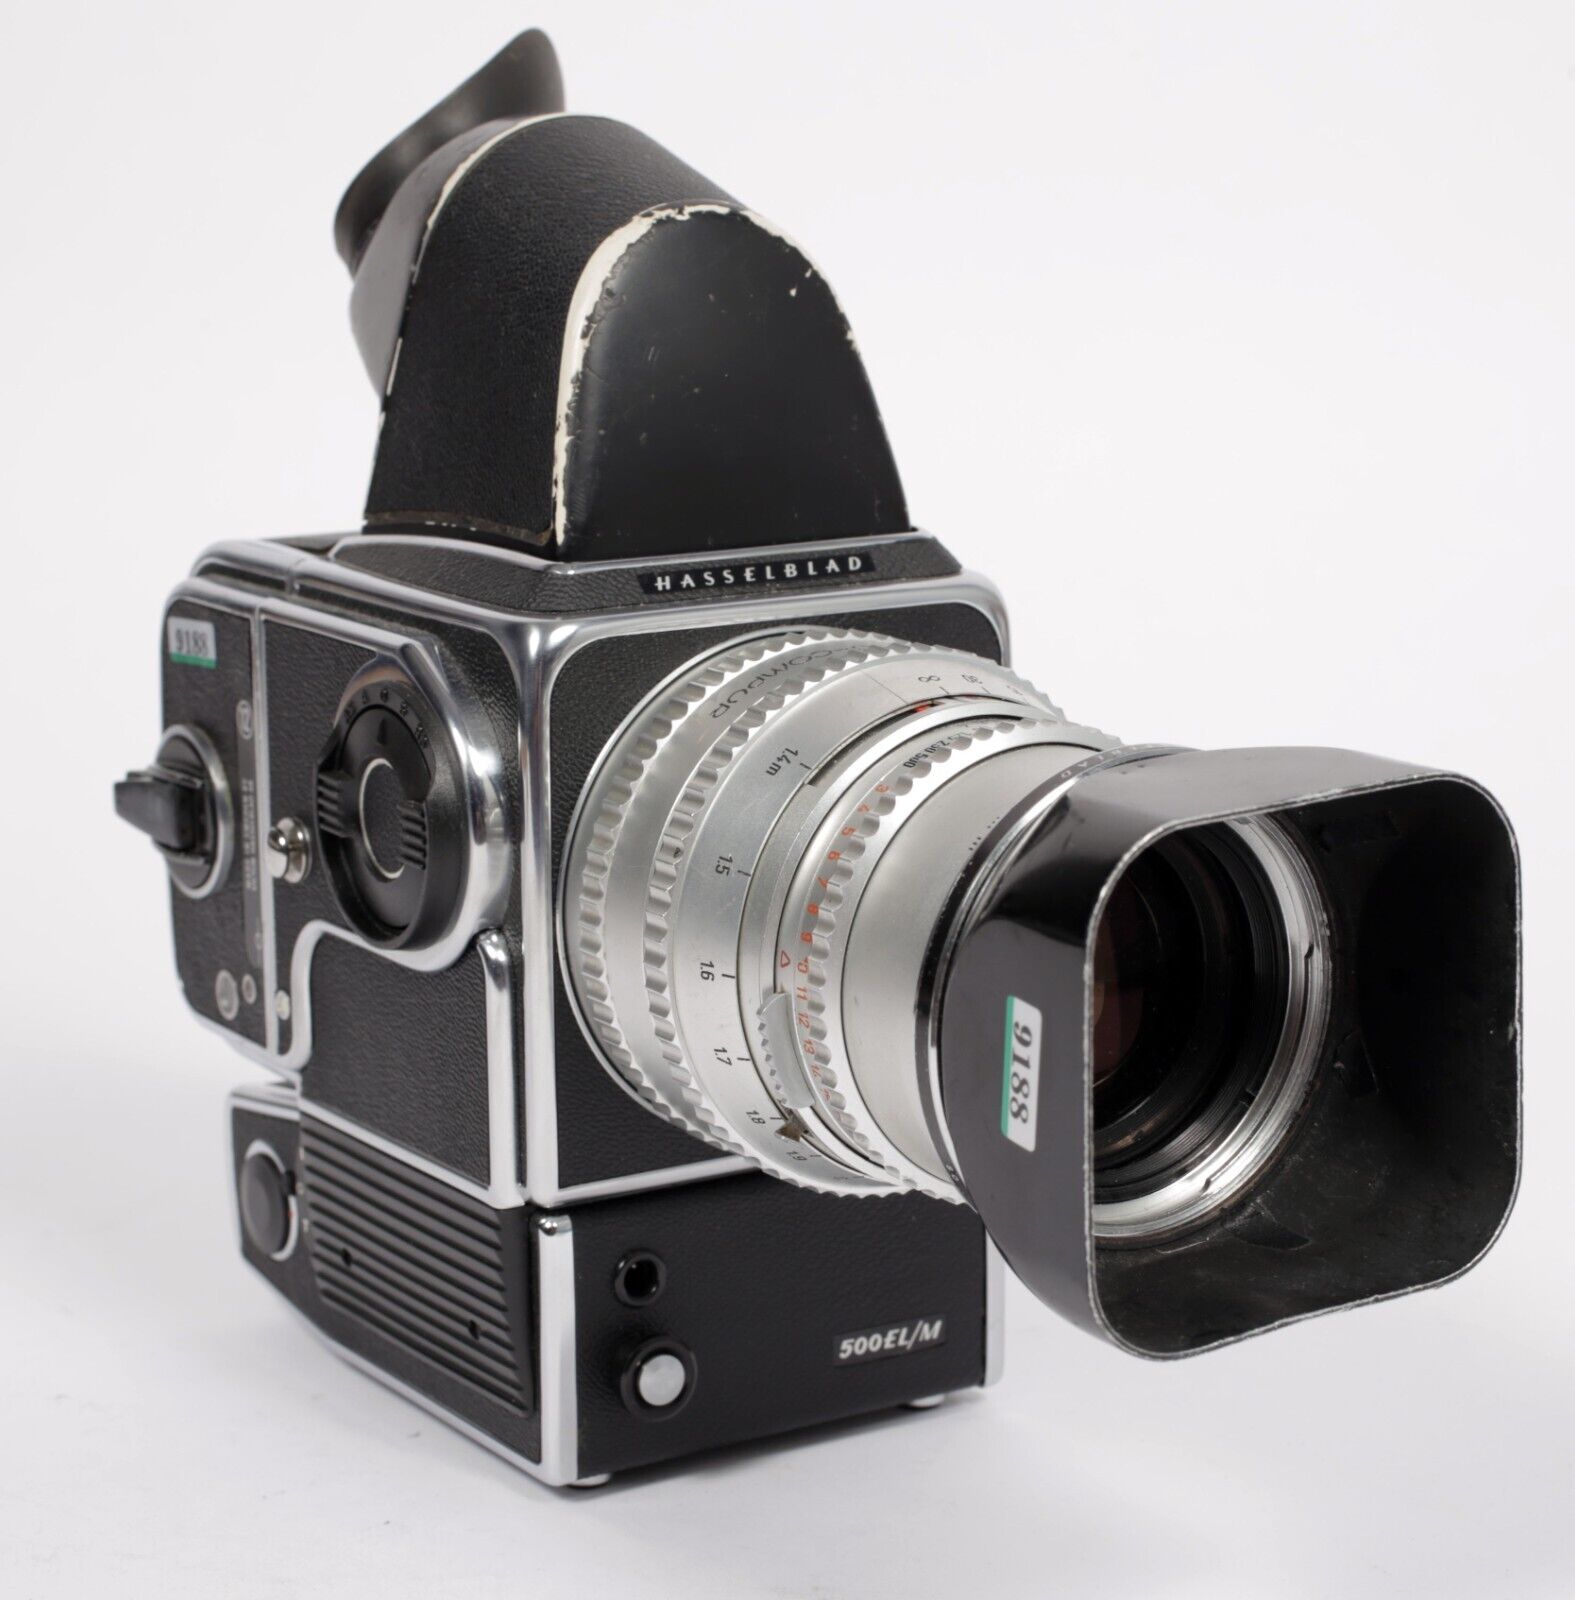 Hasselblad 500EL/M camera w/ Sonnar 150mm F4 lens + A12 Back + NC2 